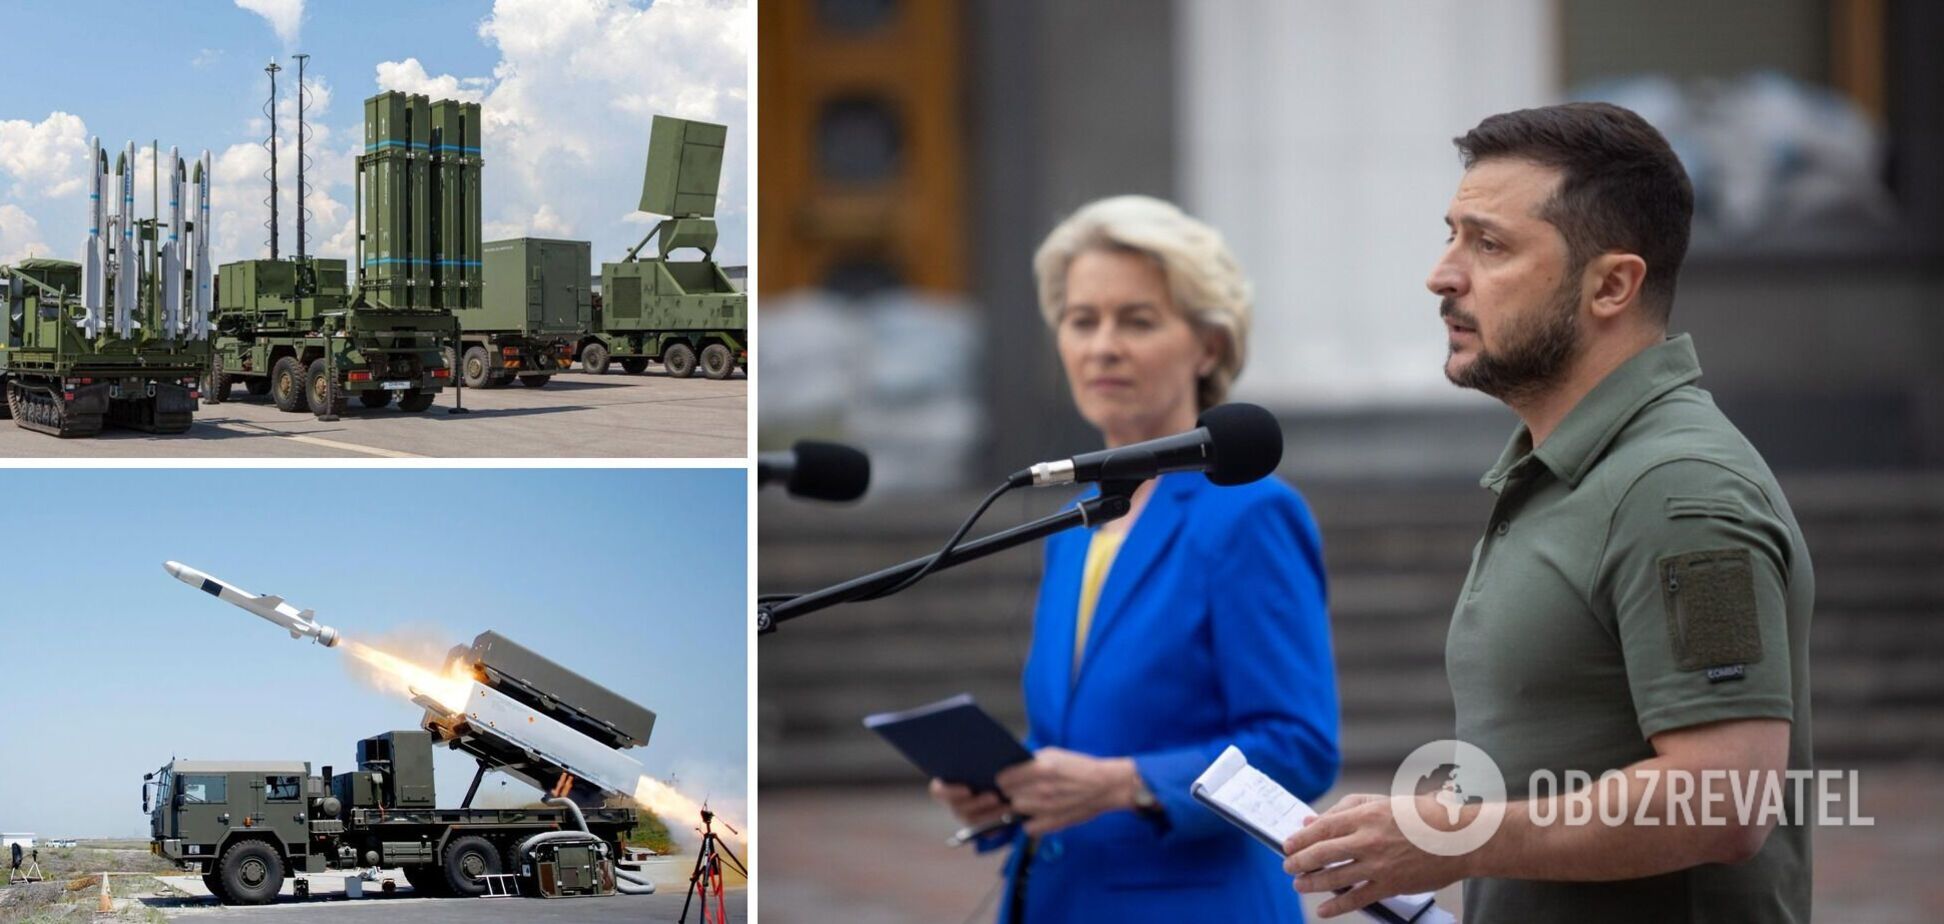 Один из приоритетов для Украины – получение систем ПВО, мы должны обеспечить людям безопасность, – Зеленский